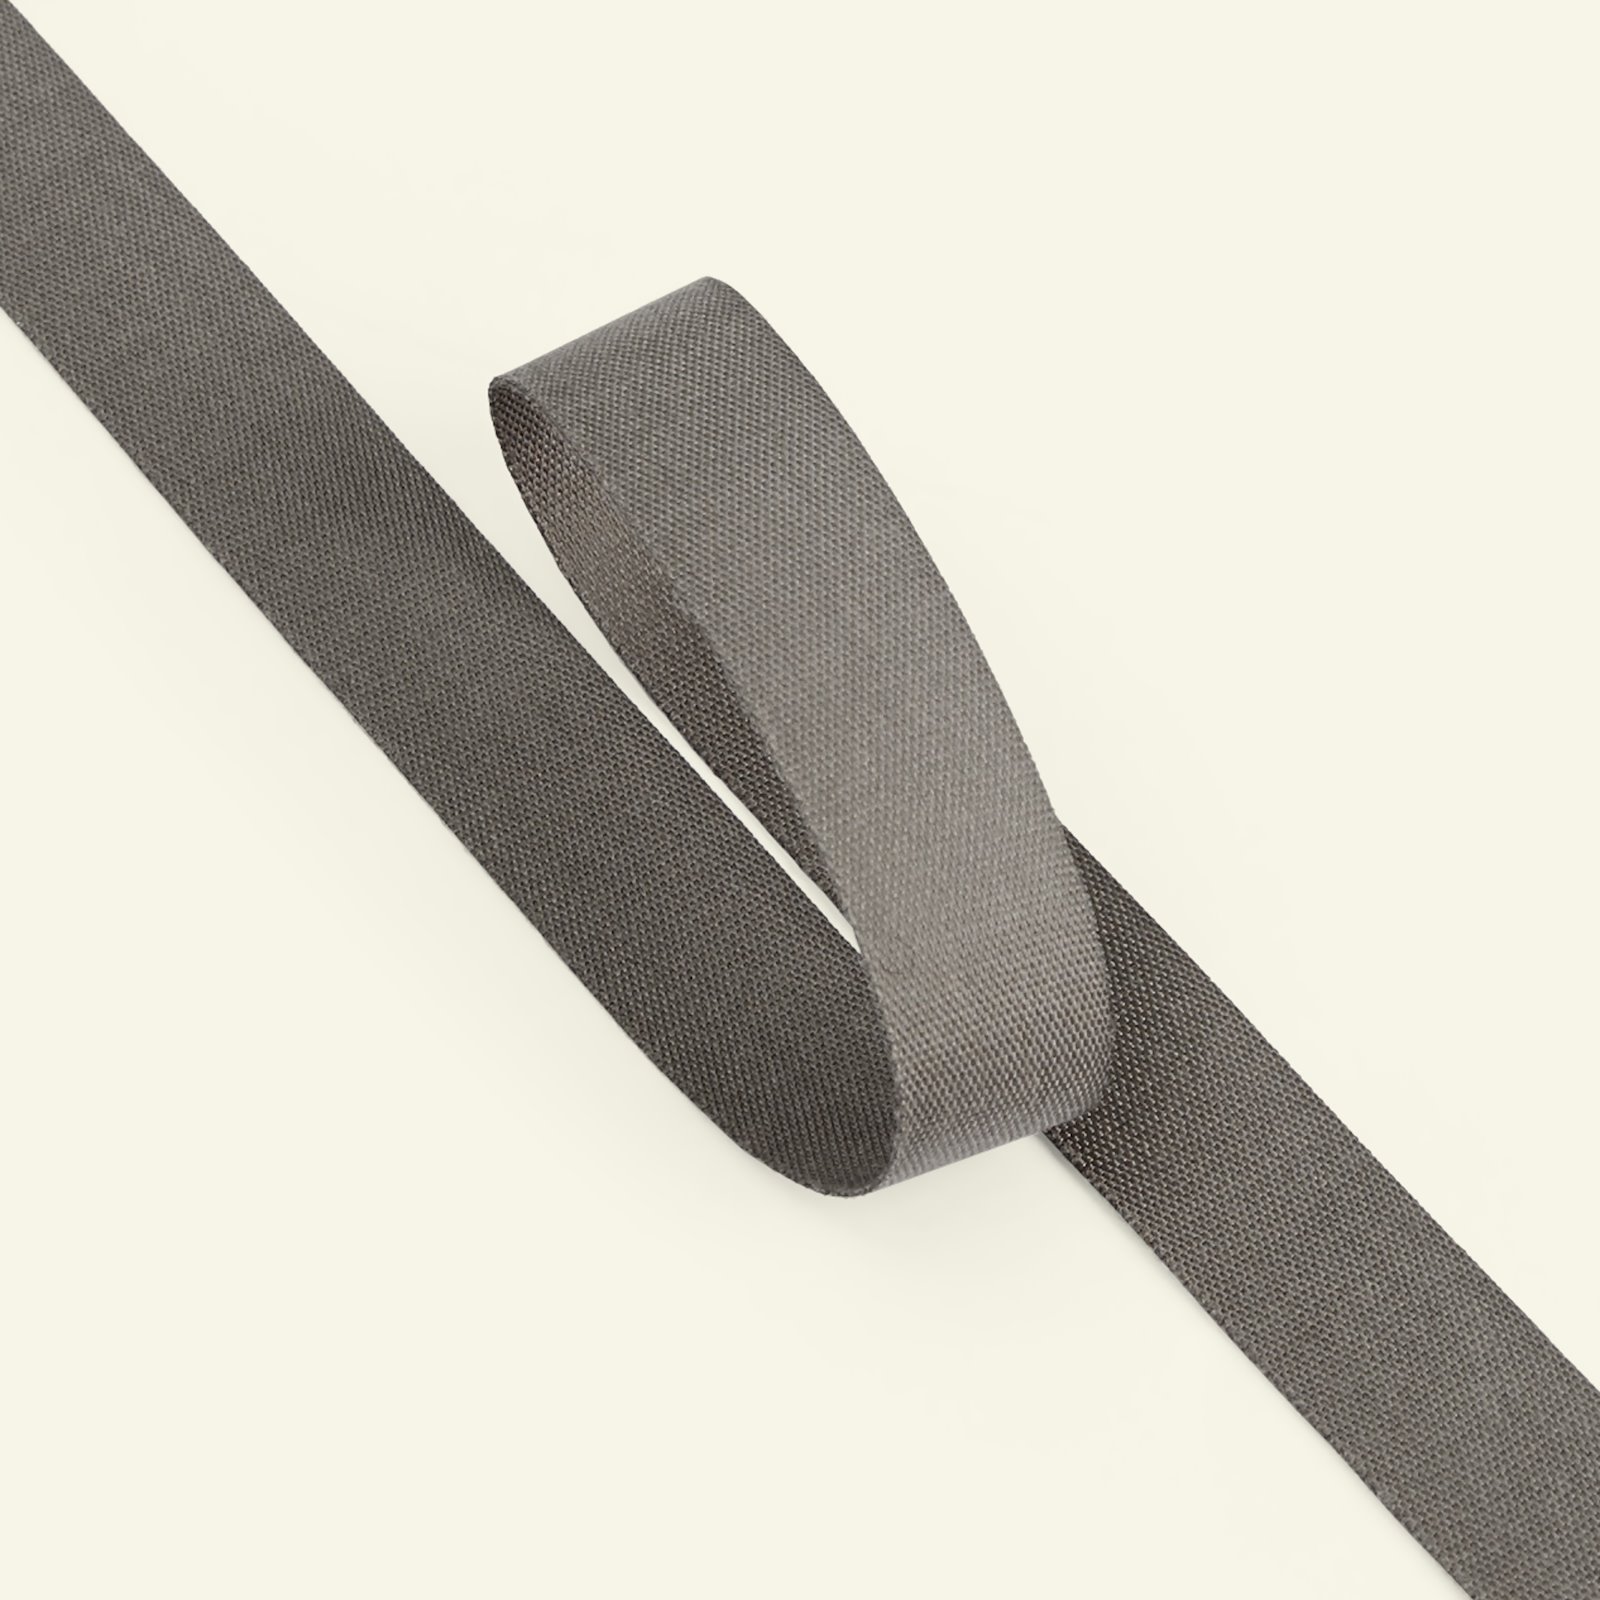 Bendelband 16mm grå 5m 80052_pack